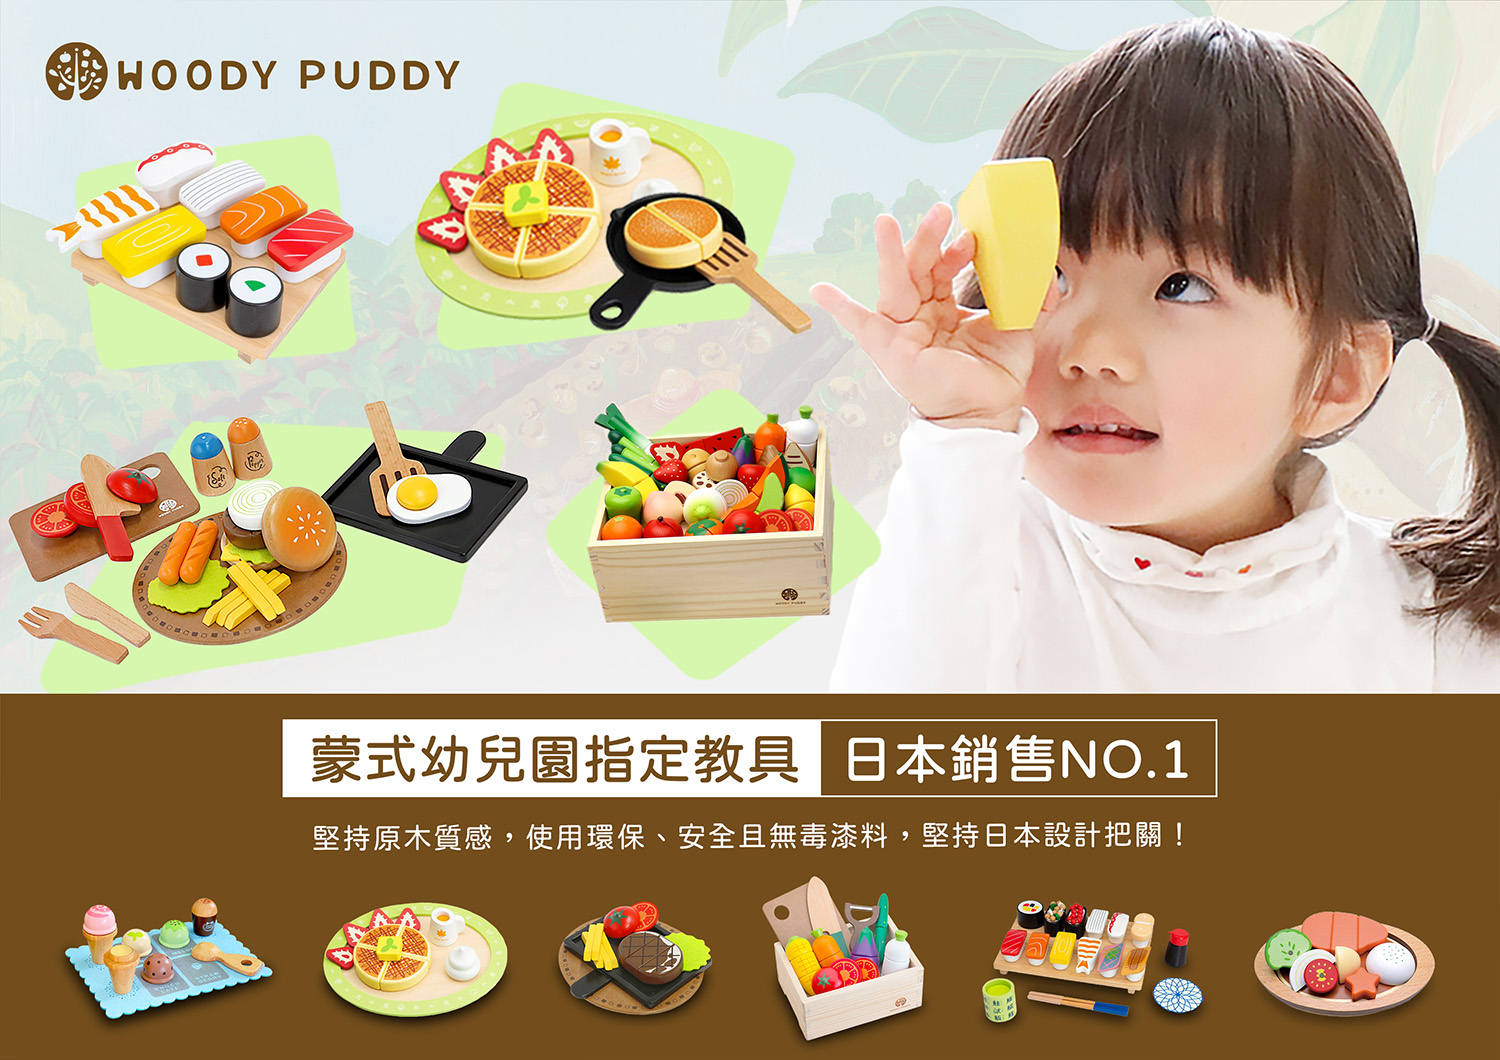 日本【Woody Puddy】 - 親子良品 | 媽媽育兒的好朋友! ((華人第一親子用品嚴選網 ))